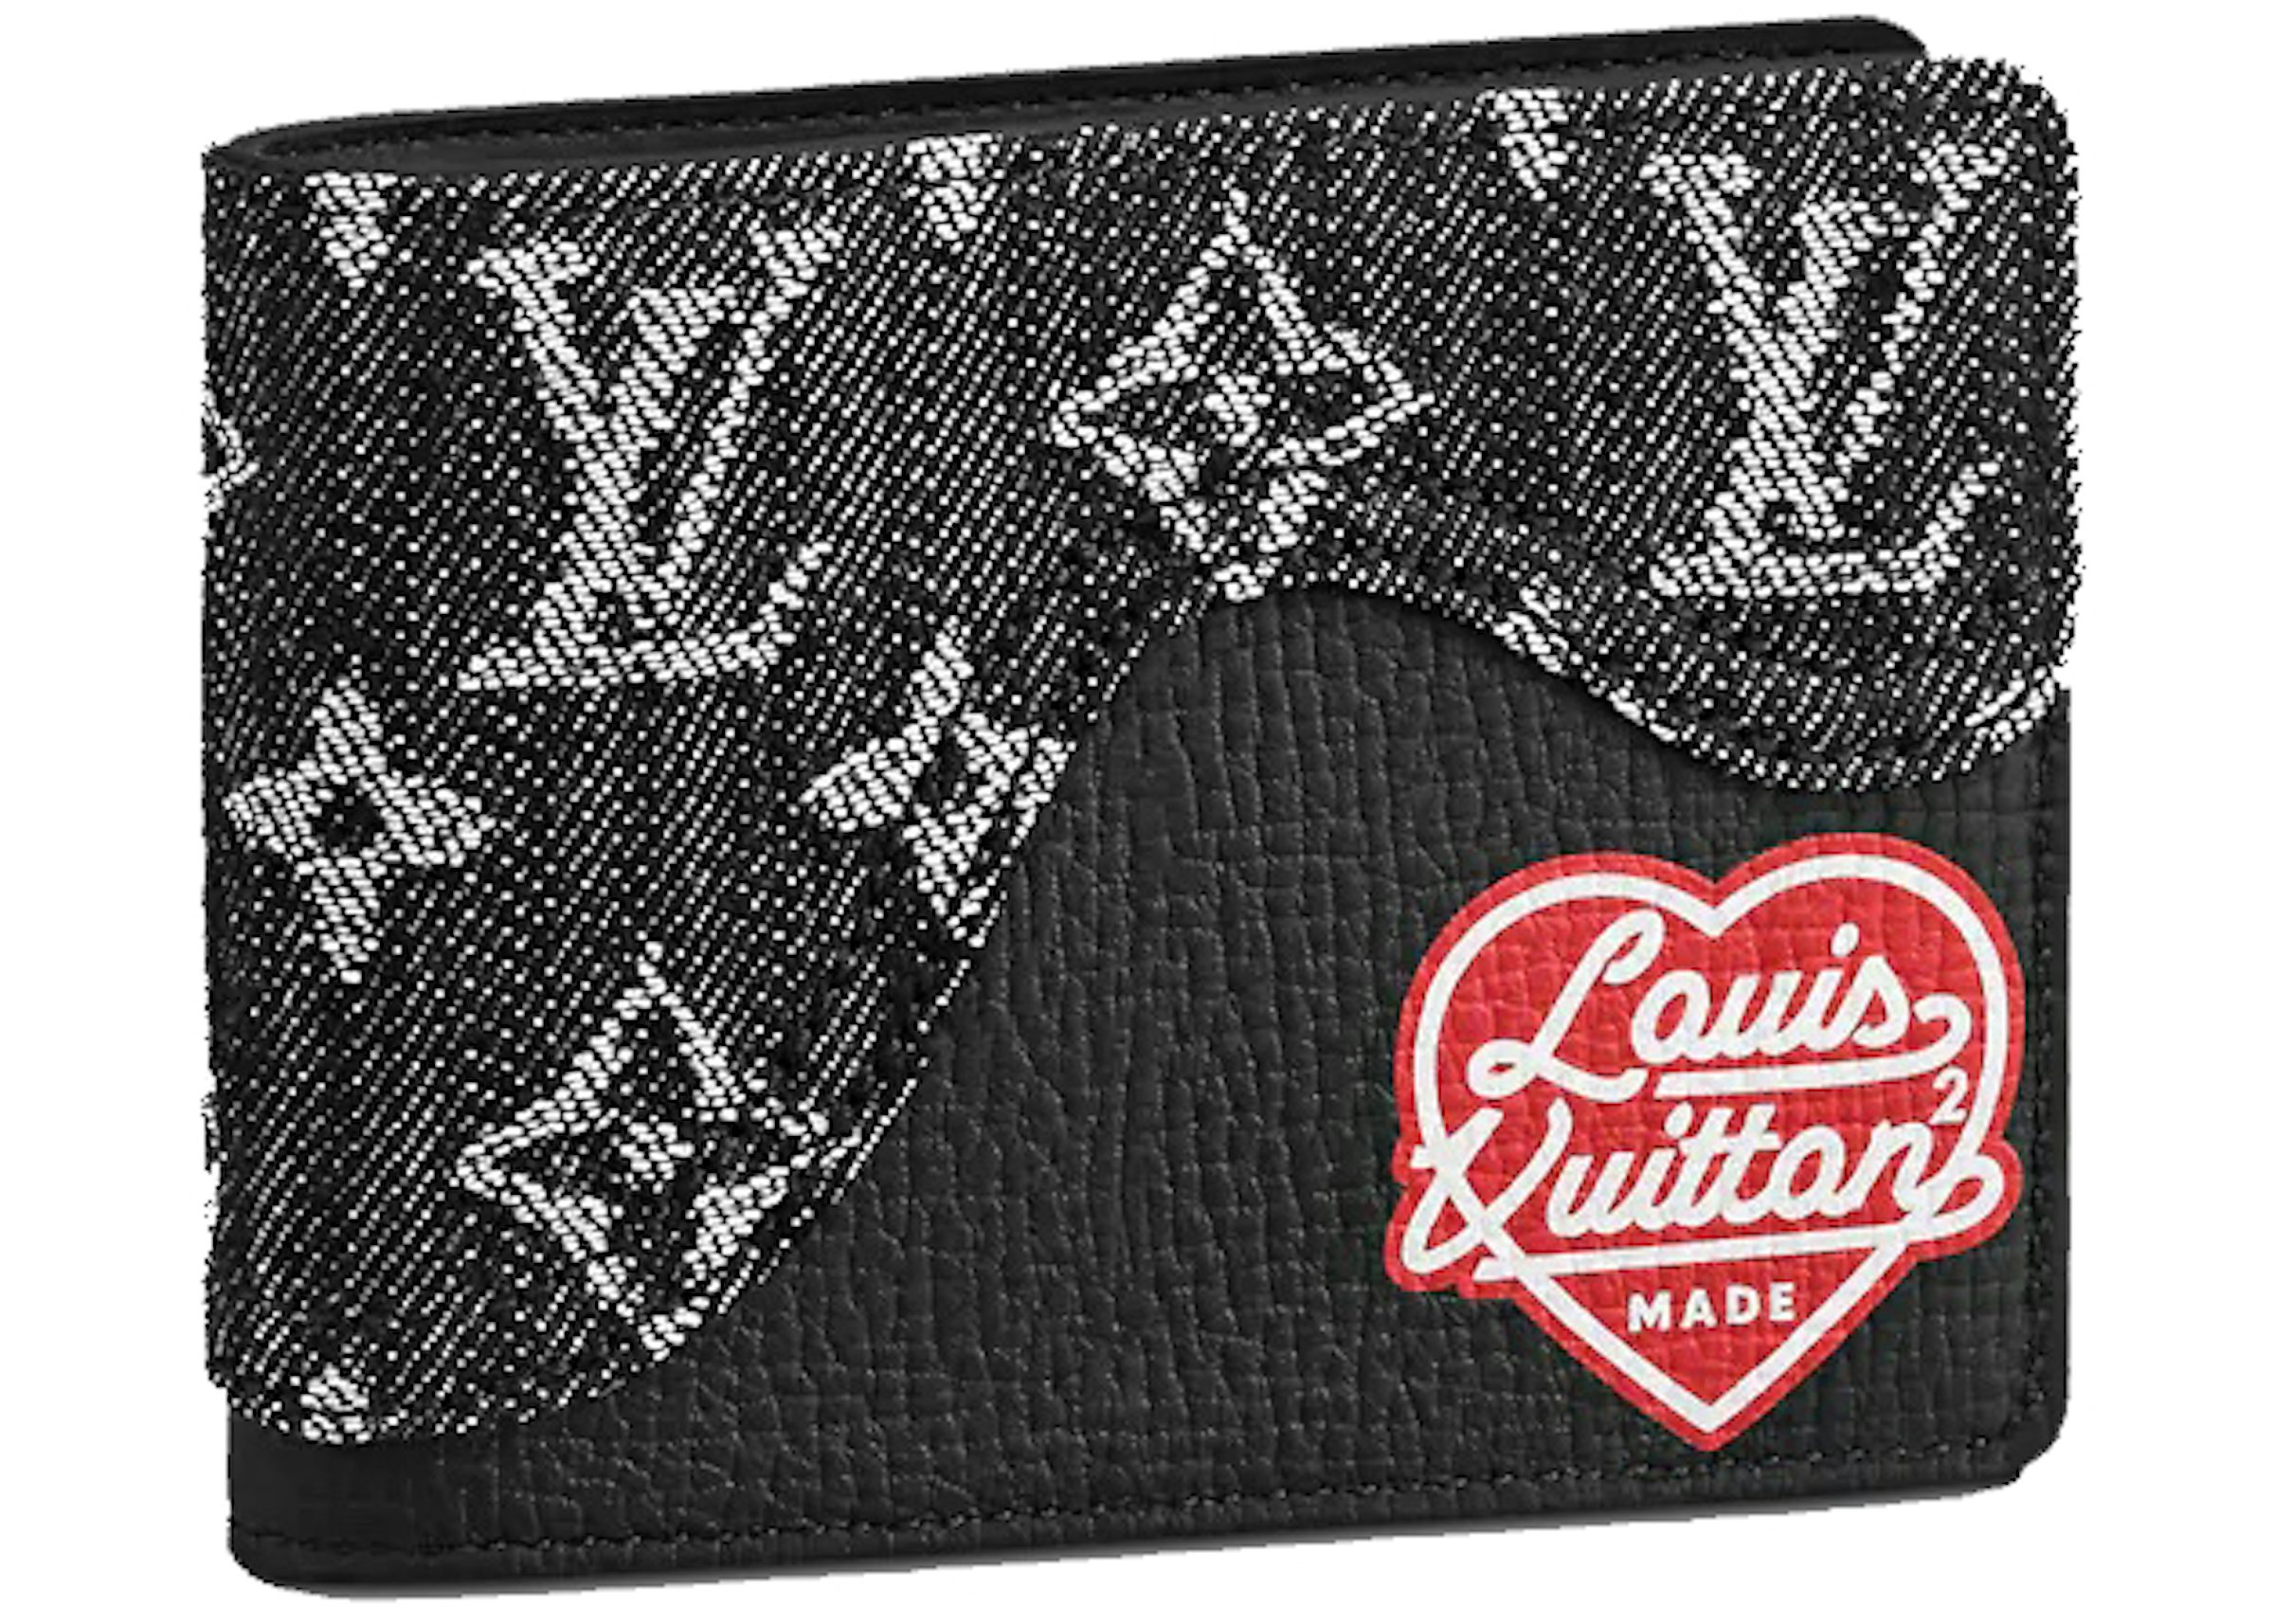 Louis Vuitton x Nigo Slender Wallet Monogram Black in Denim/Leather - US